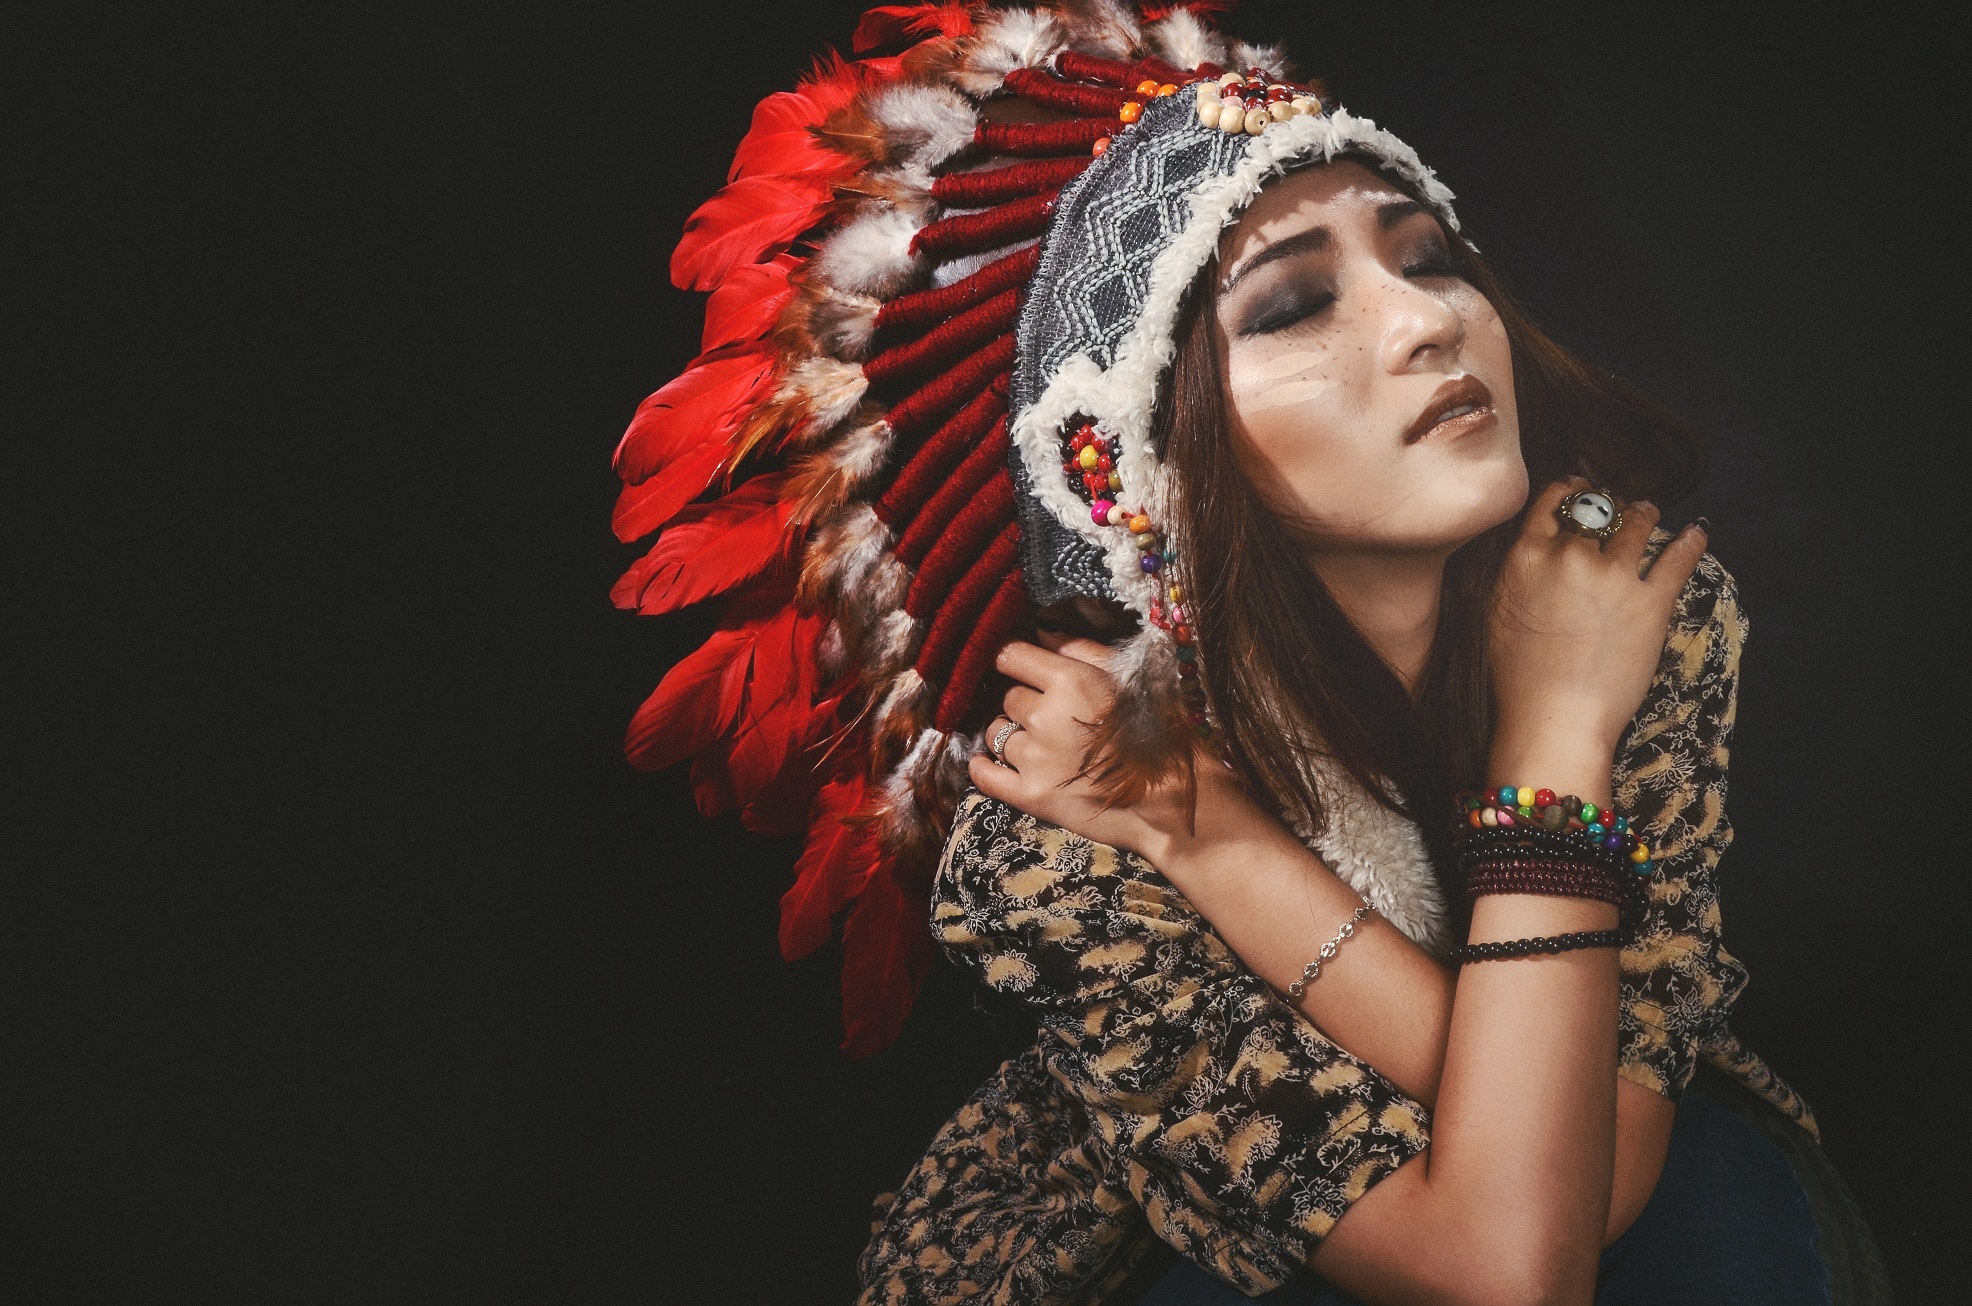 레드 인디언 벽지,투구,아름다움,머리 장식,사진술,사진 촬영